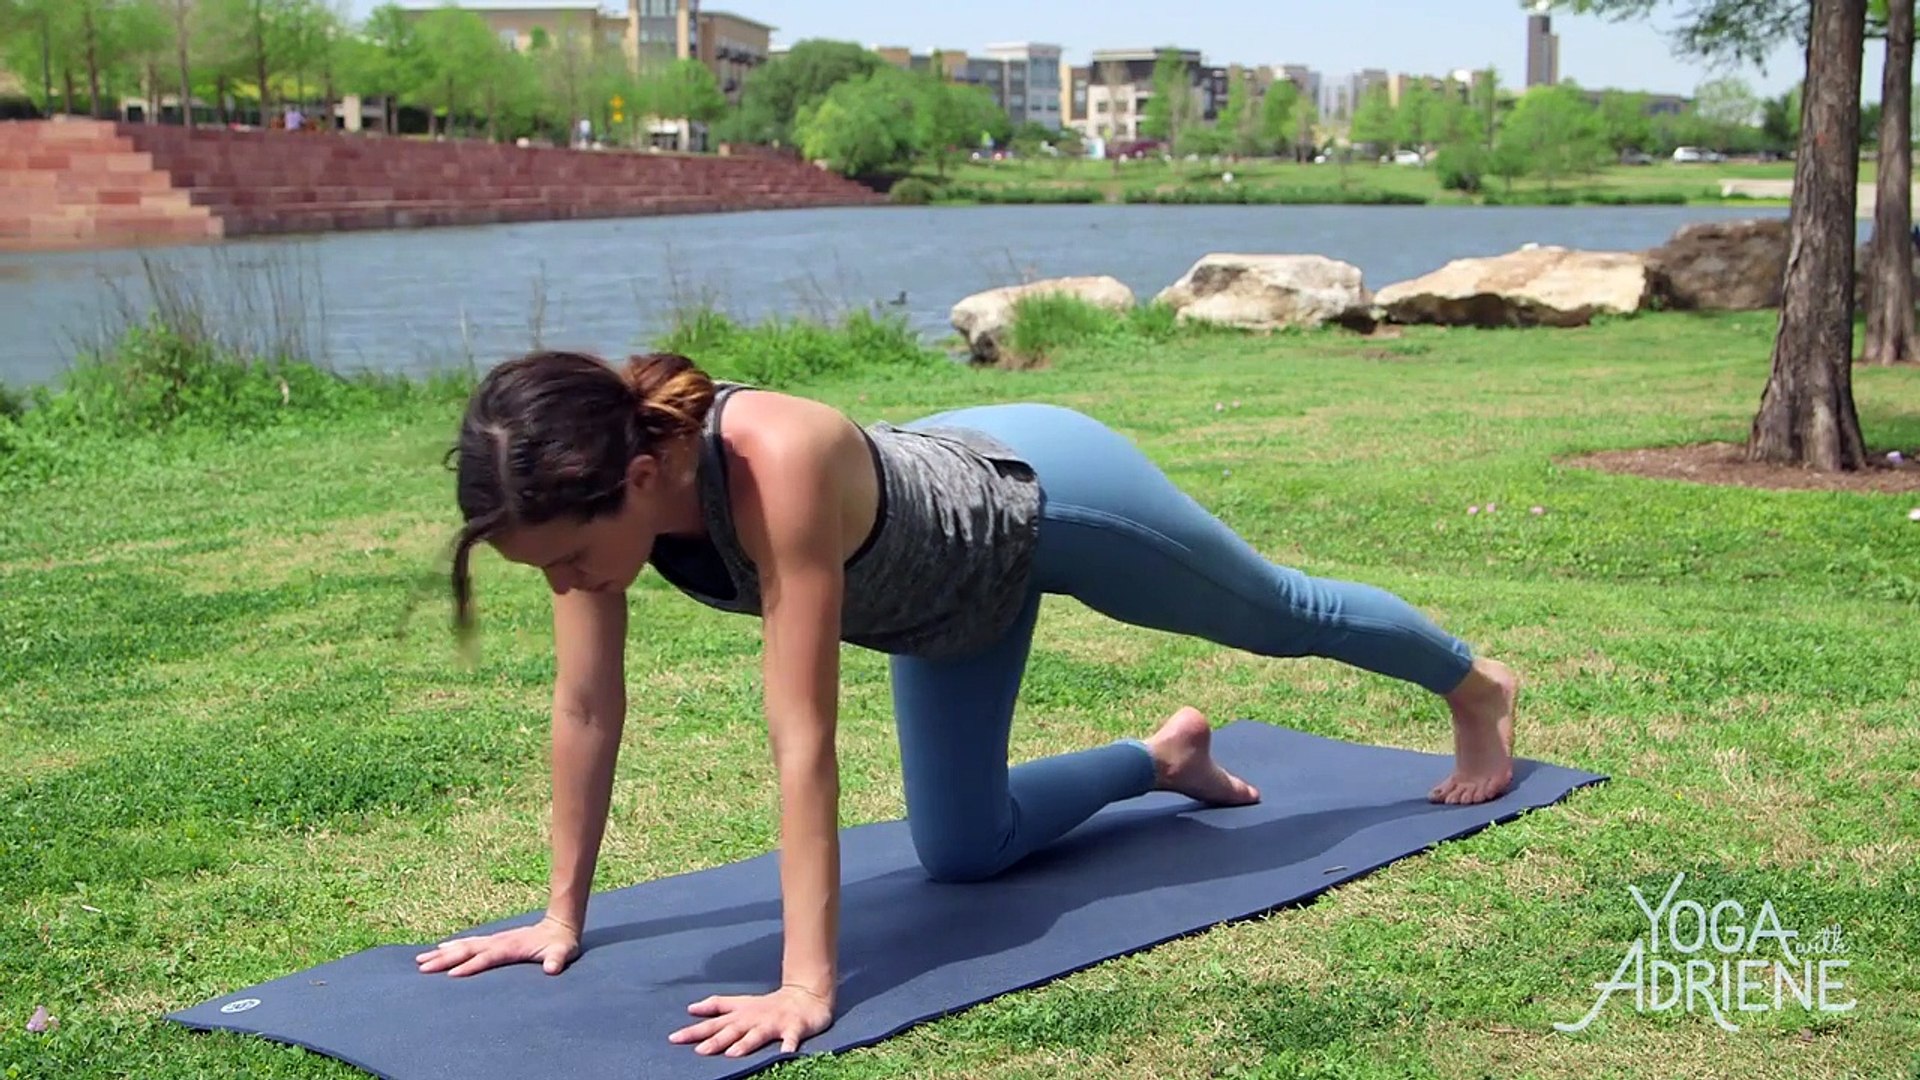 Yoga Stretch - Yoga With Adriene